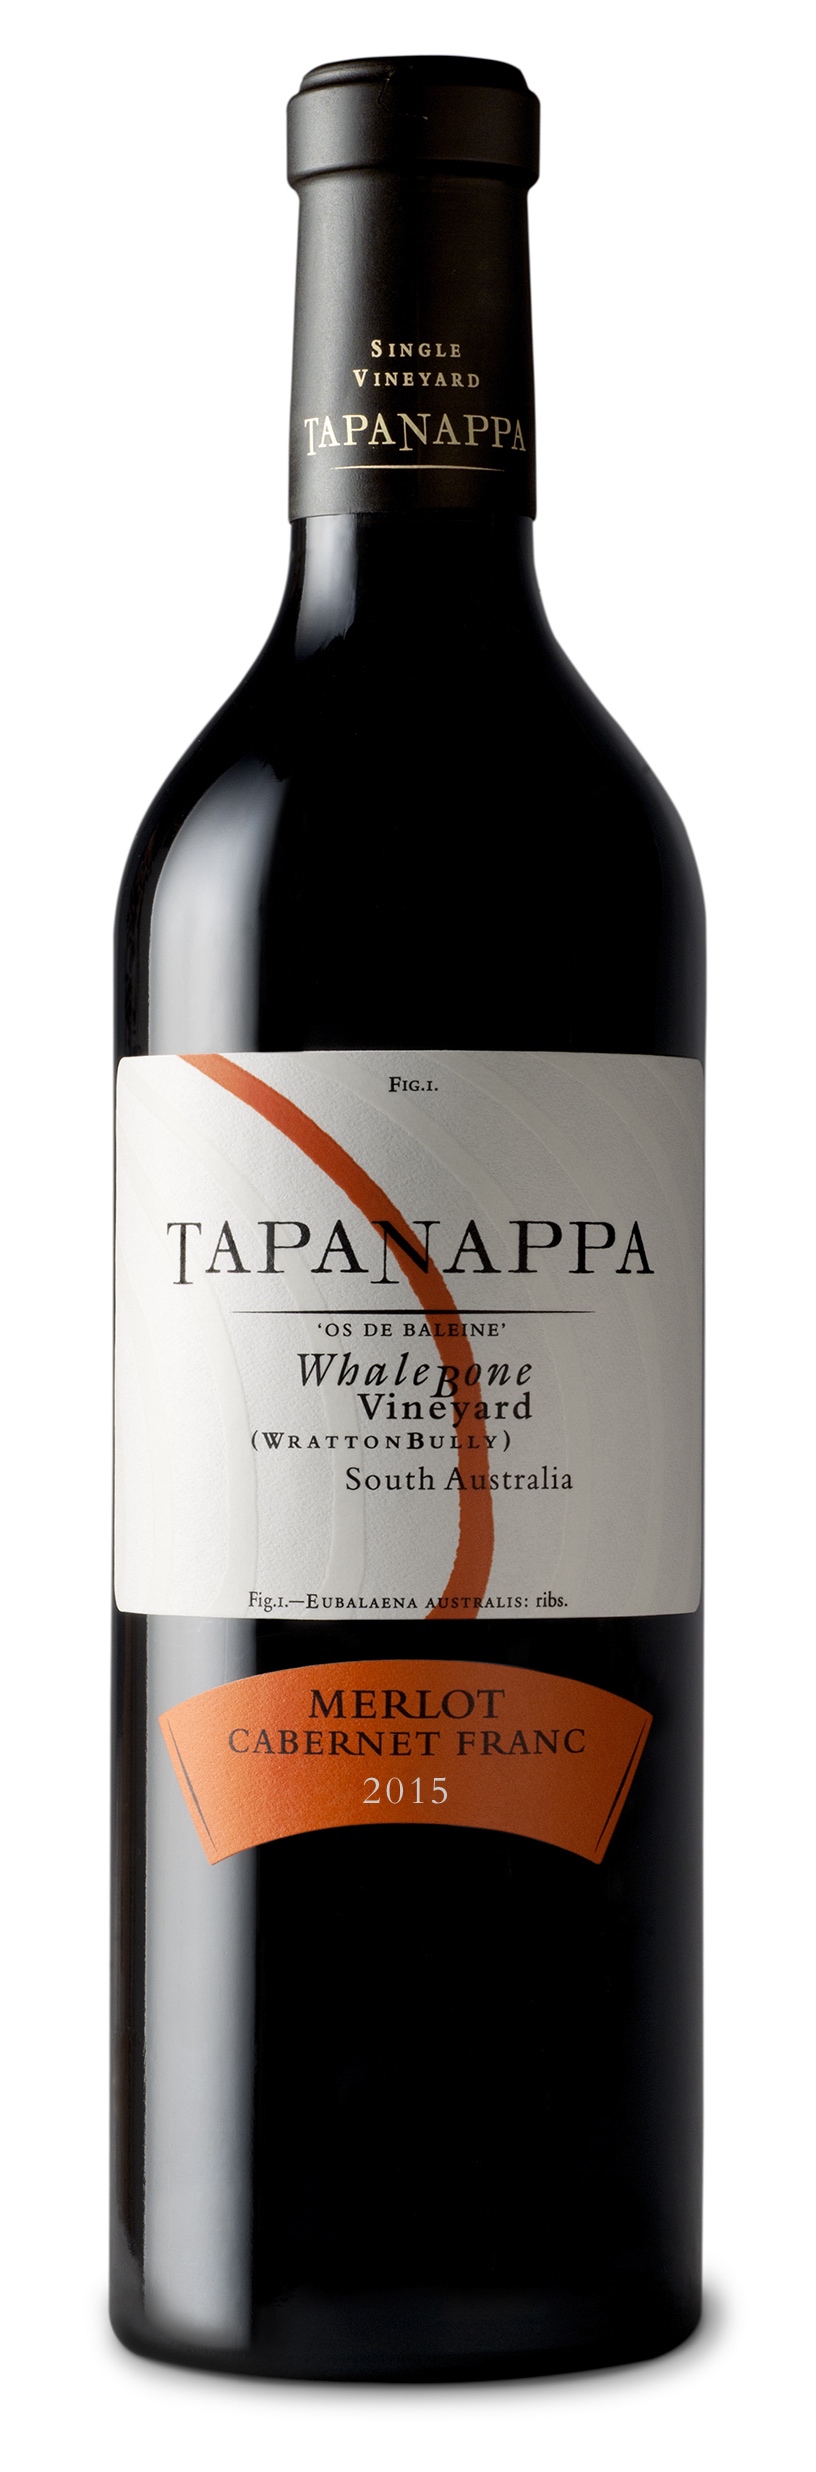 Tapanappa Whalebone Vineyard 2015 Merlot Cabernet Franc Bottleshot